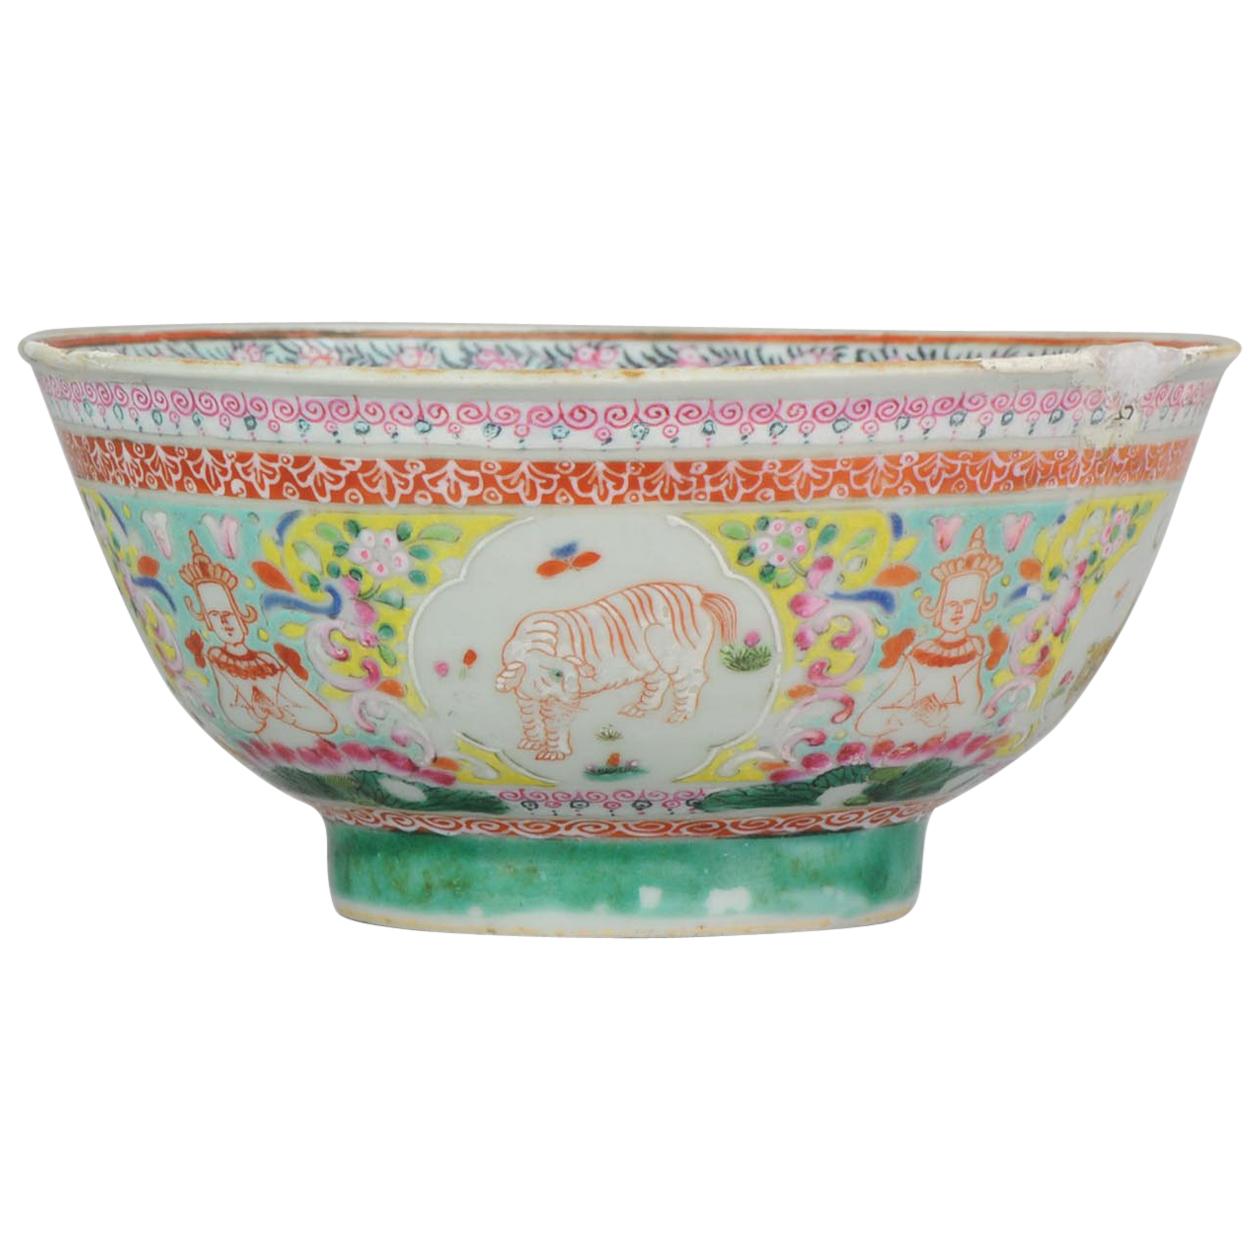 Bol en porcelaine chinoise antique du 18ème siècle, Secrétaire asiatique du marché thaïlandais/maïlandais de Bencharong